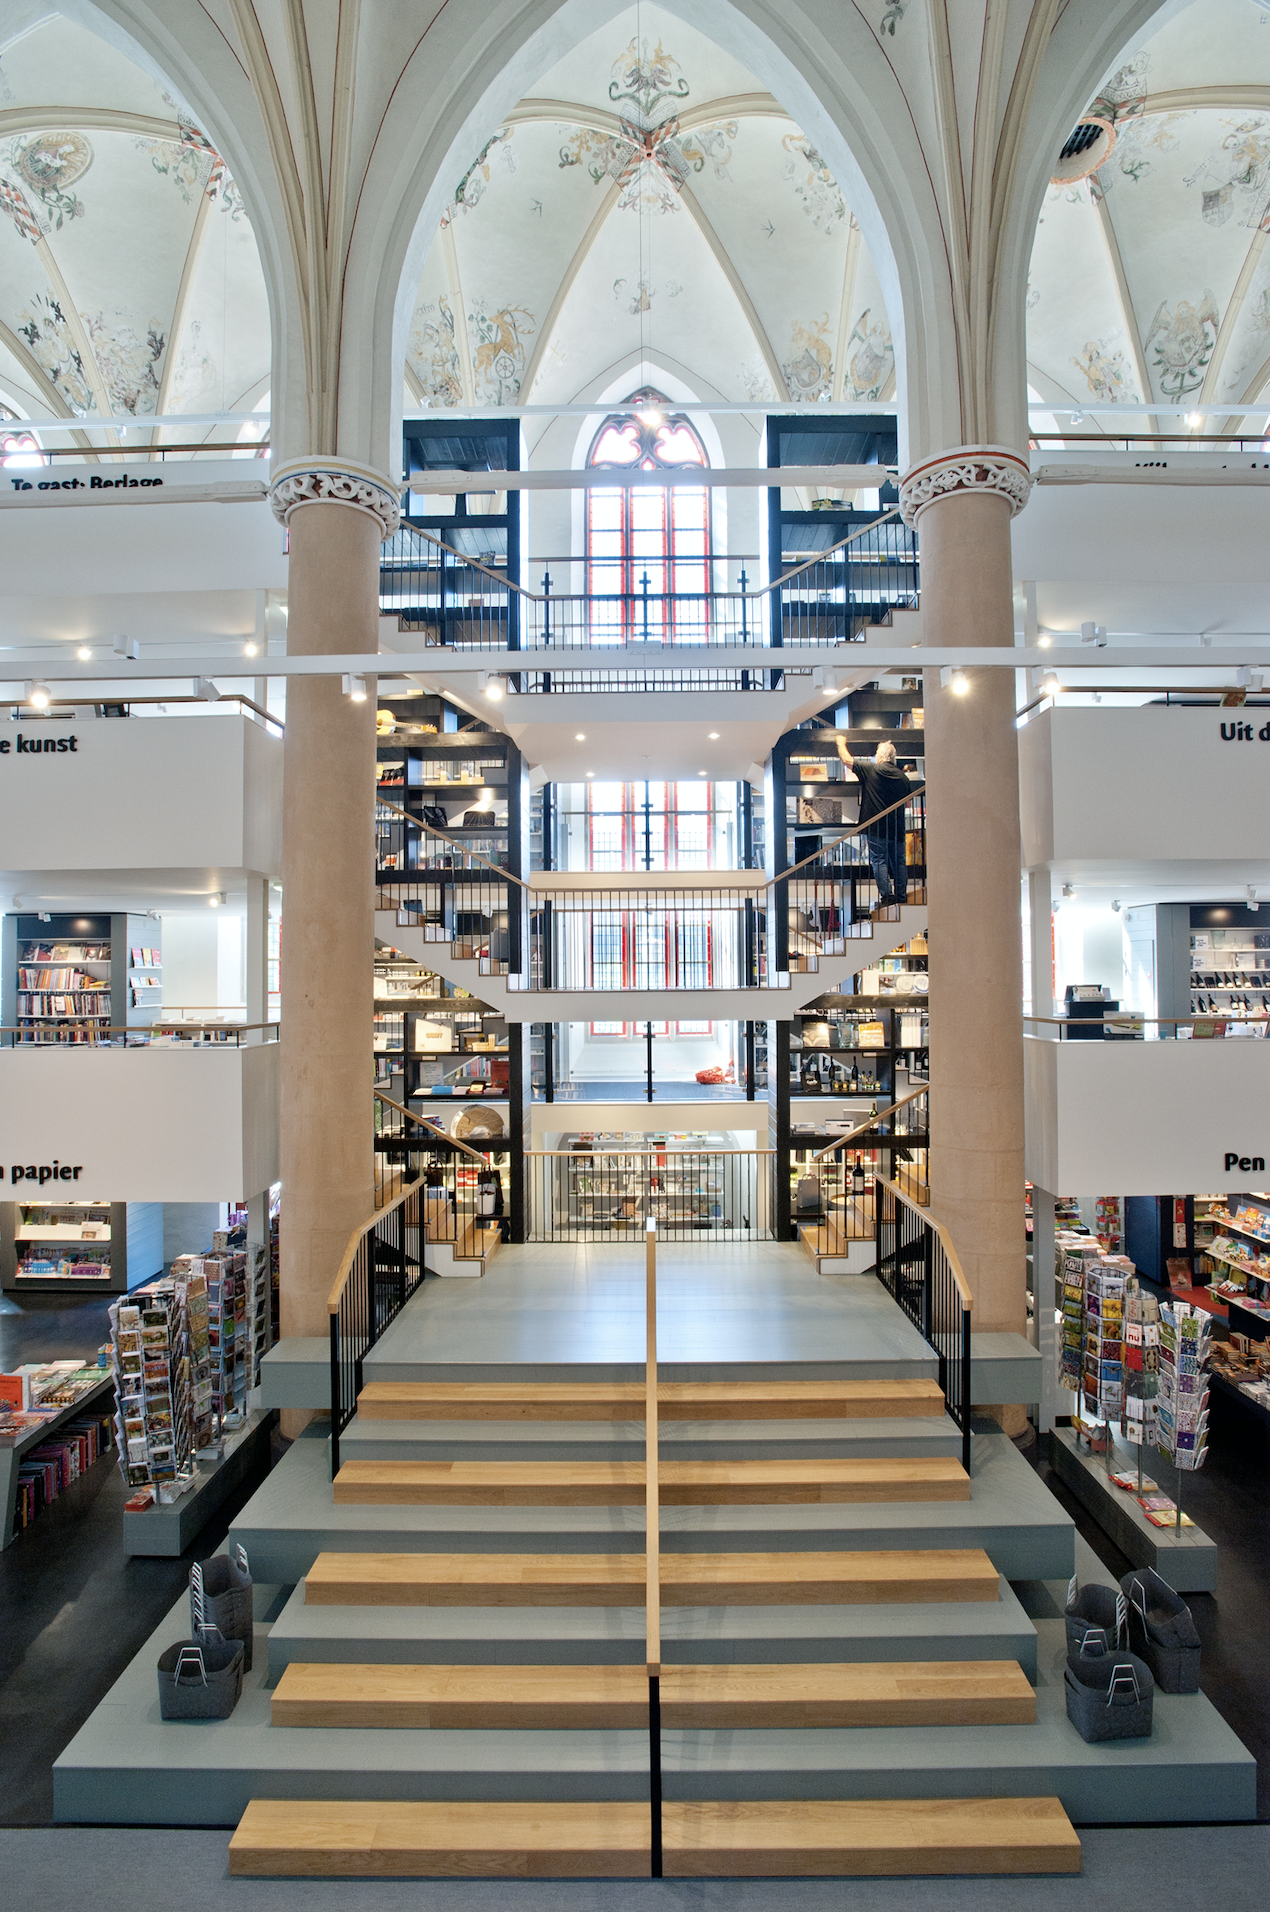 Promoten Onbelangrijk Rekwisieten Dit zijn de mooiste boekenwinkels van Nederland